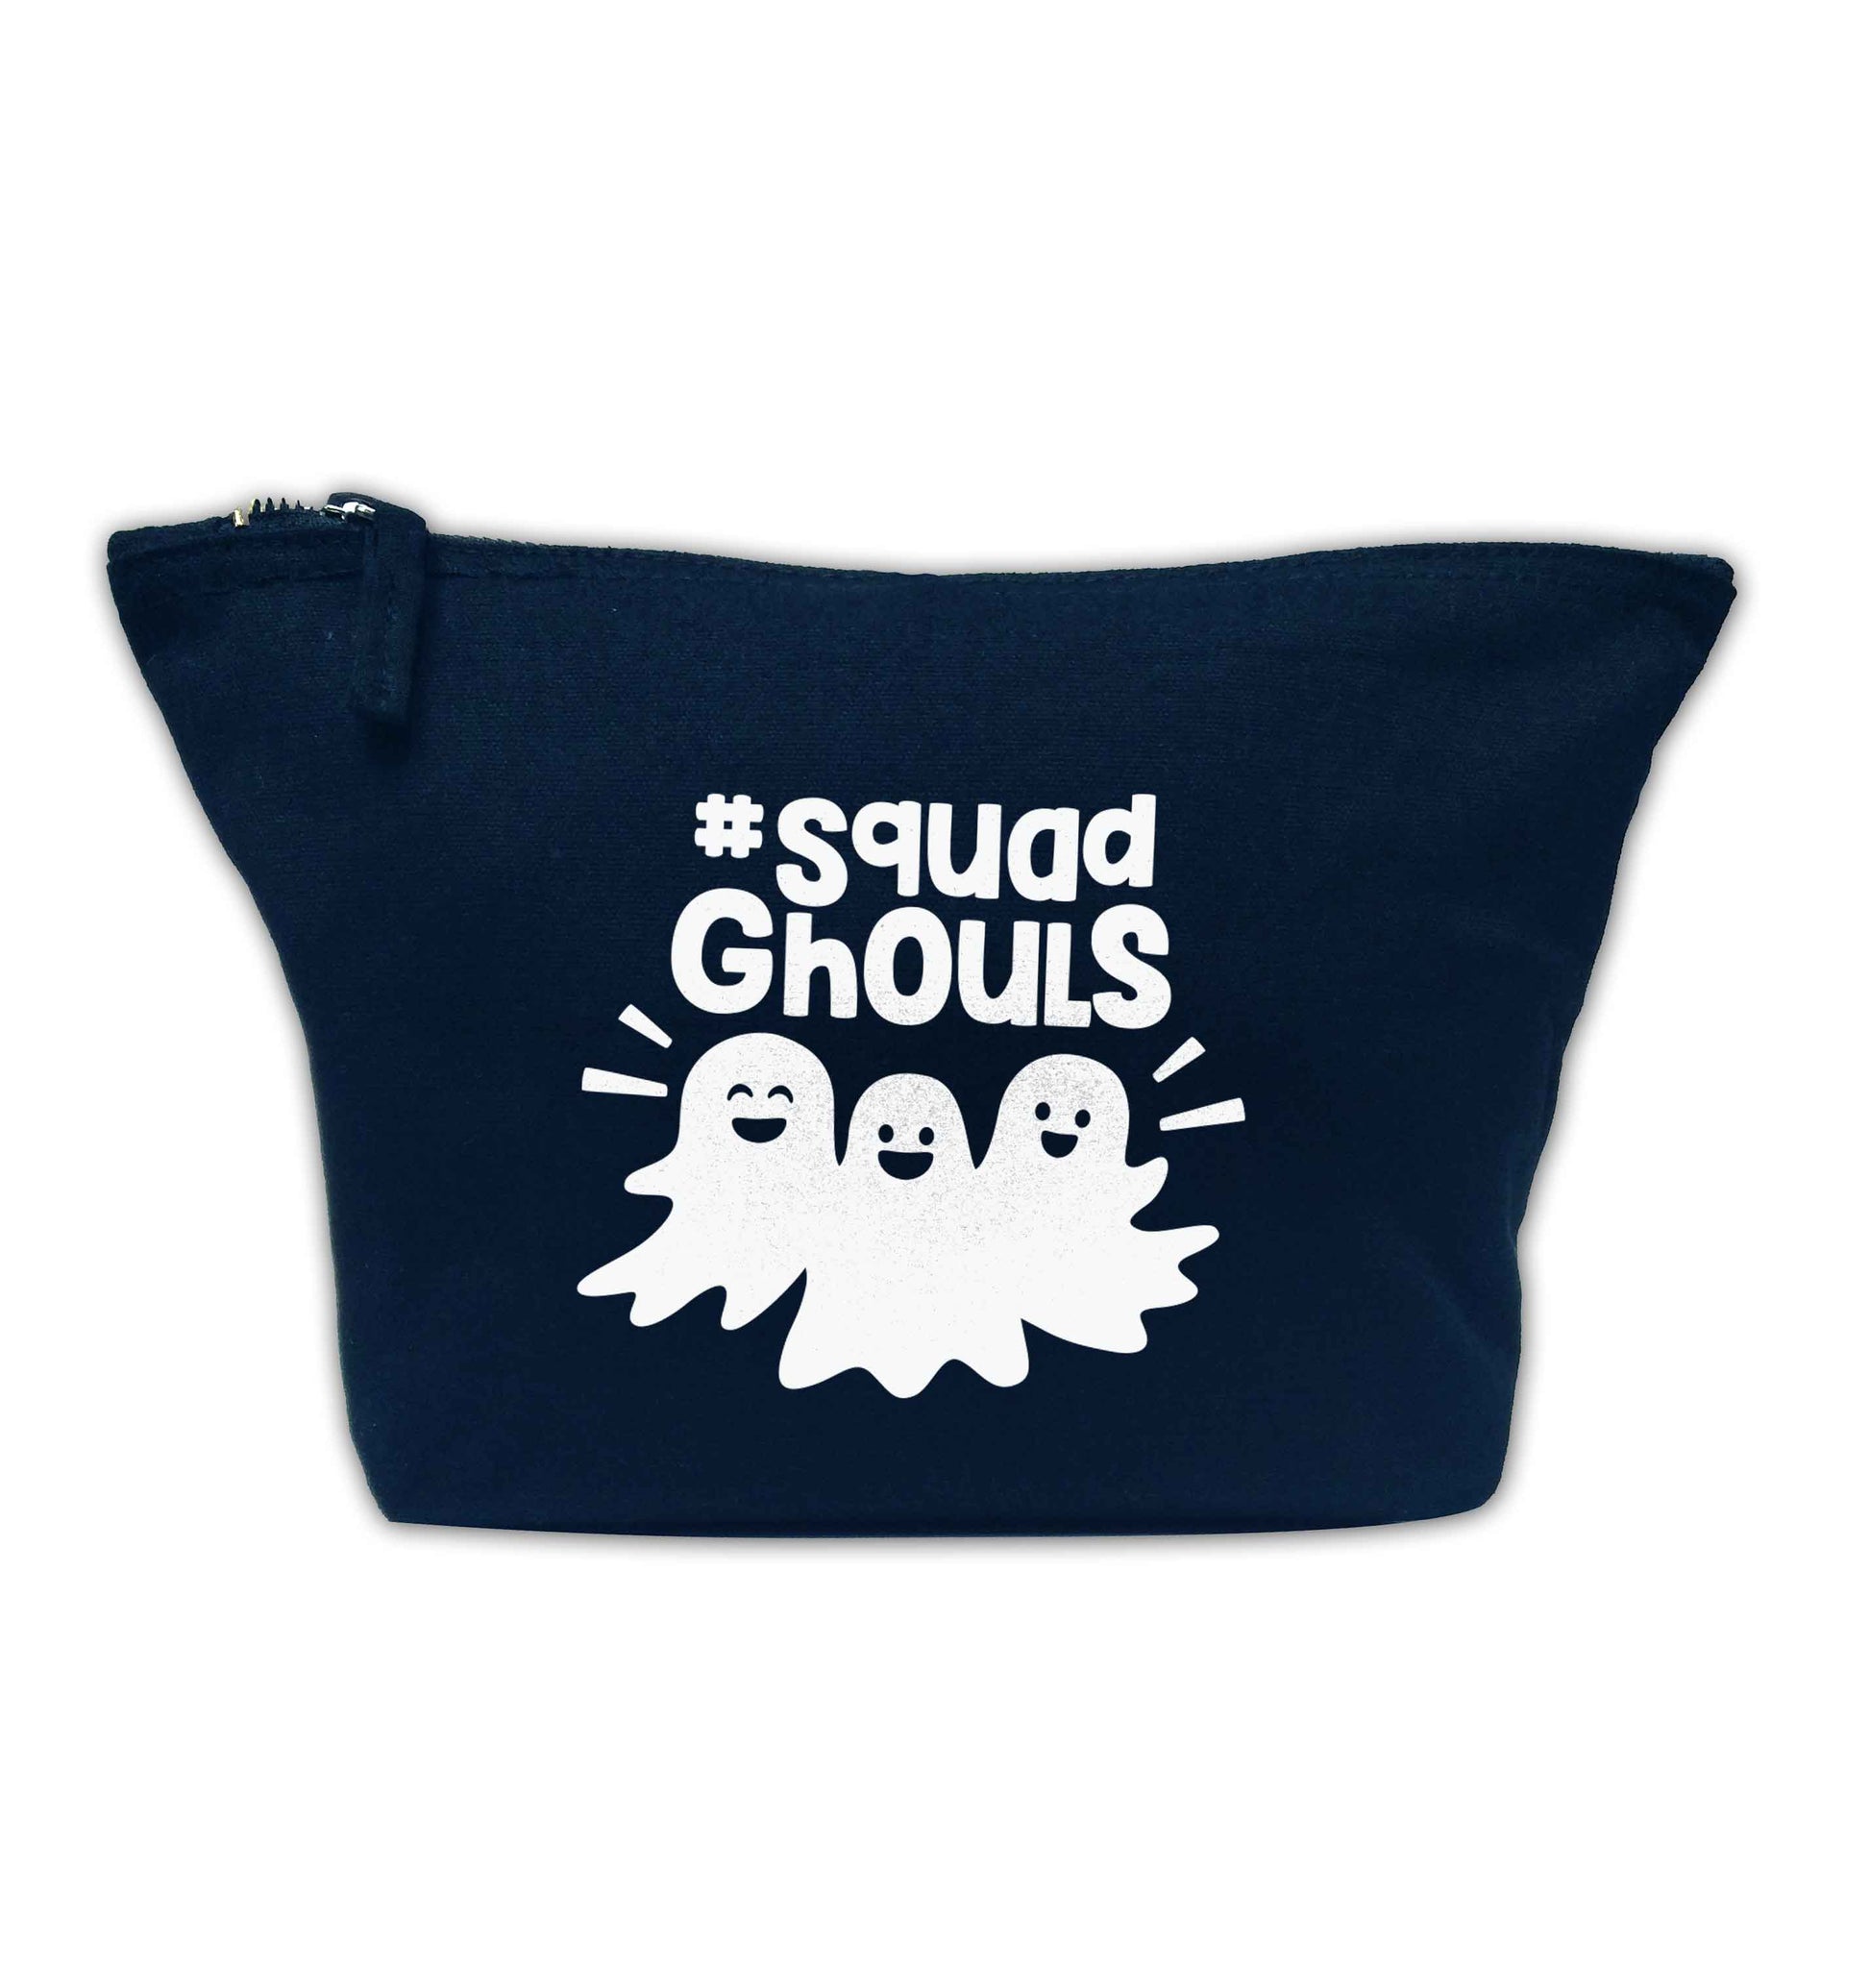 Squad ghouls Kit navy makeup bag